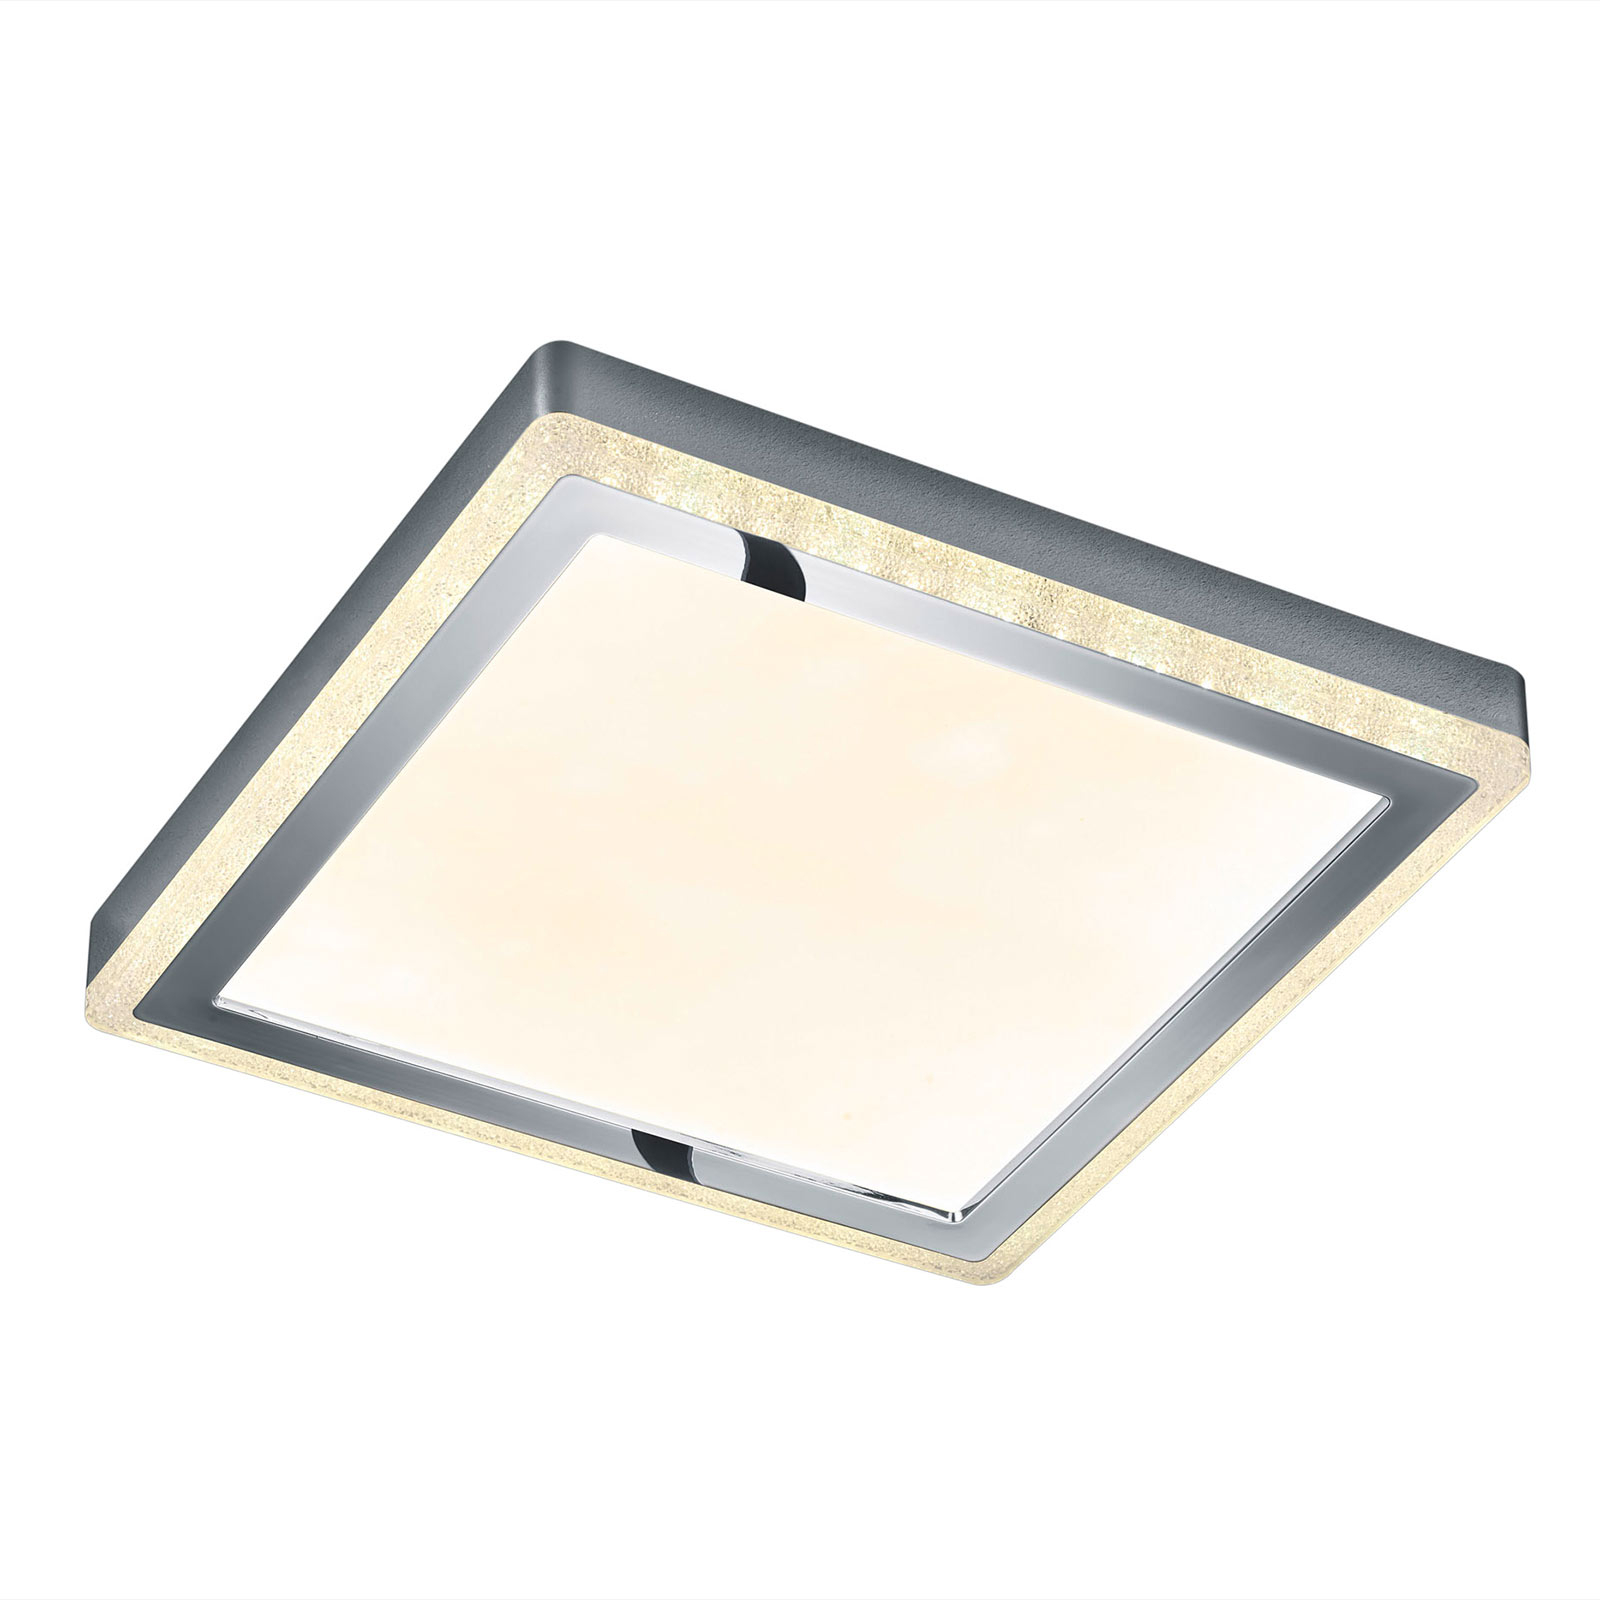 LED stropní svítidlo Slide, bílé, hranaté 40x40 cm